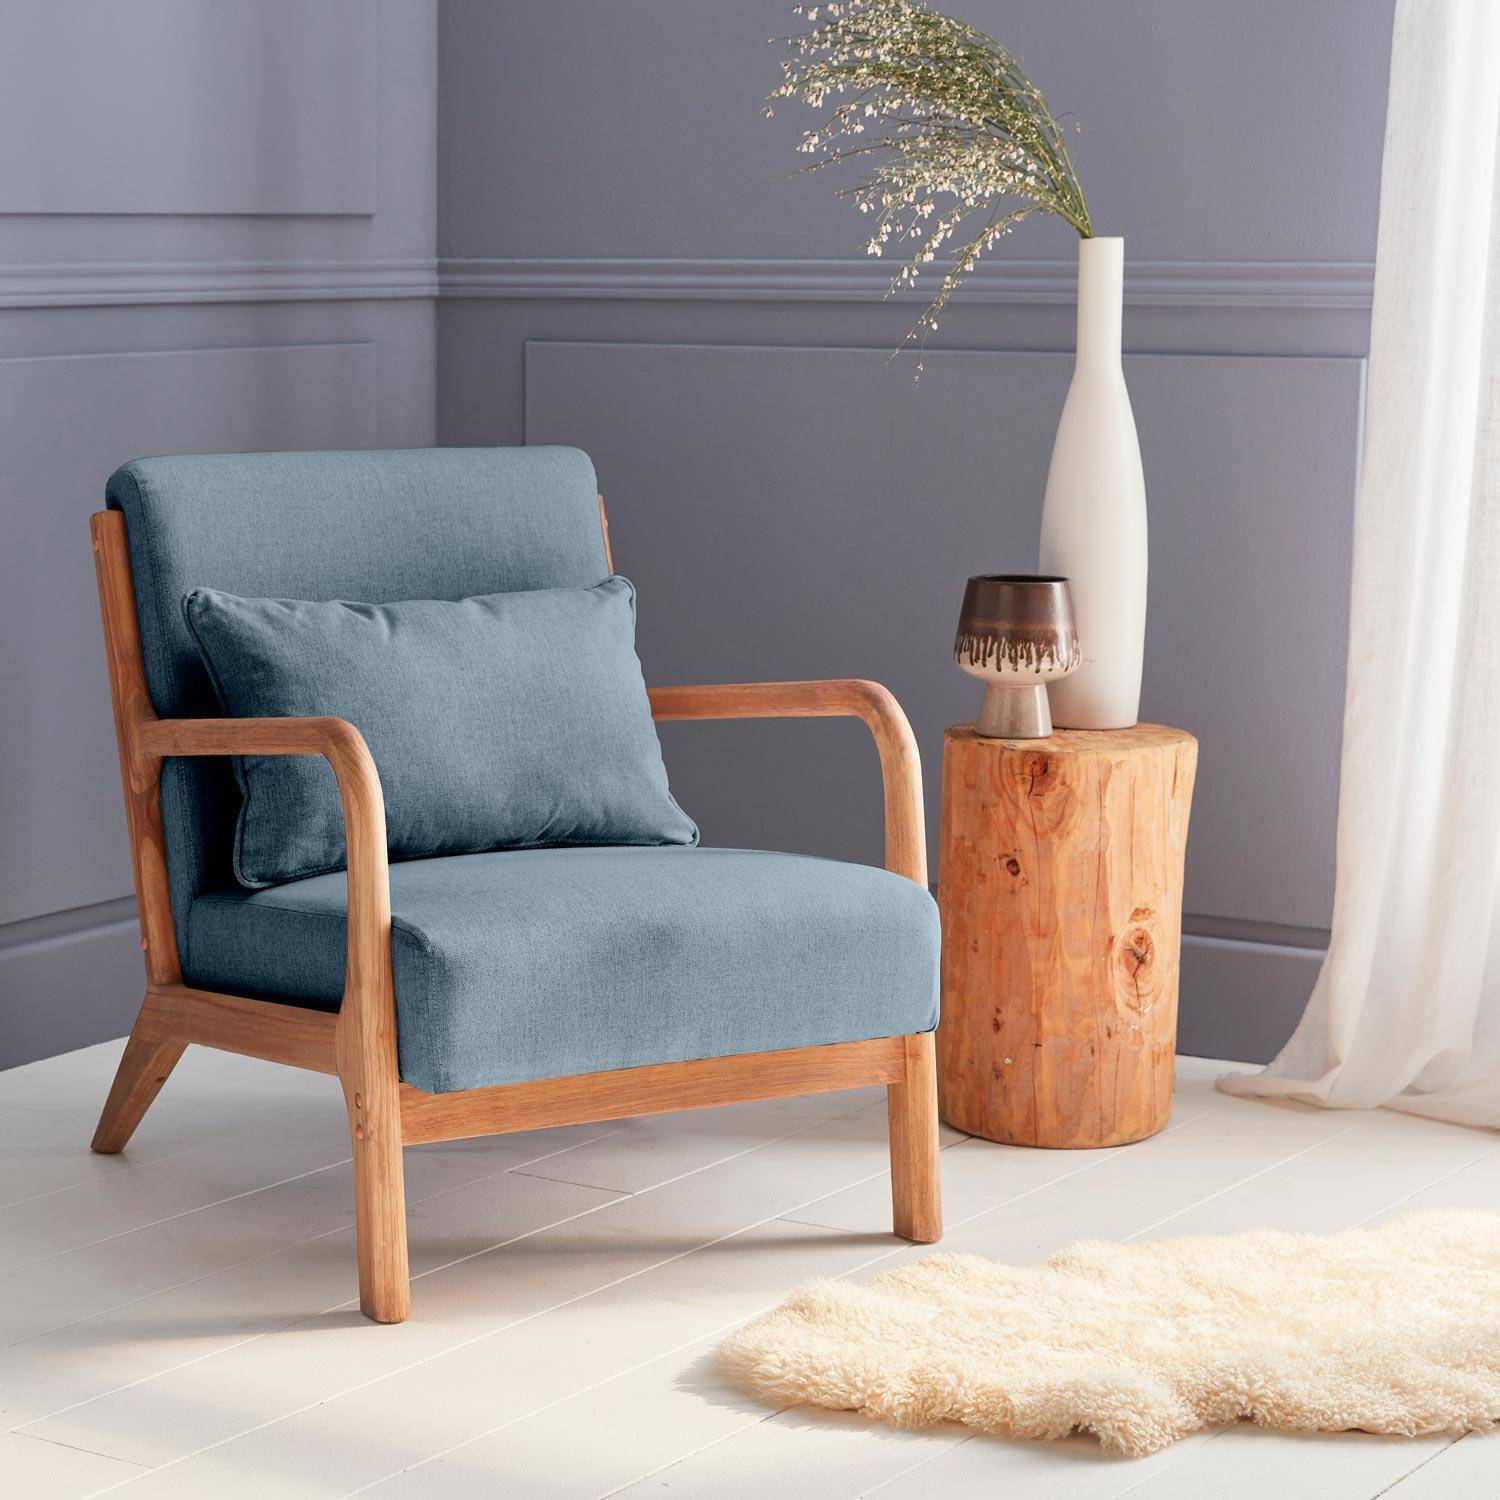 Poltrona di design in legno e tessuto, 1 seduta fissa diritta, gambe a compasso scandinave, blu Photo1